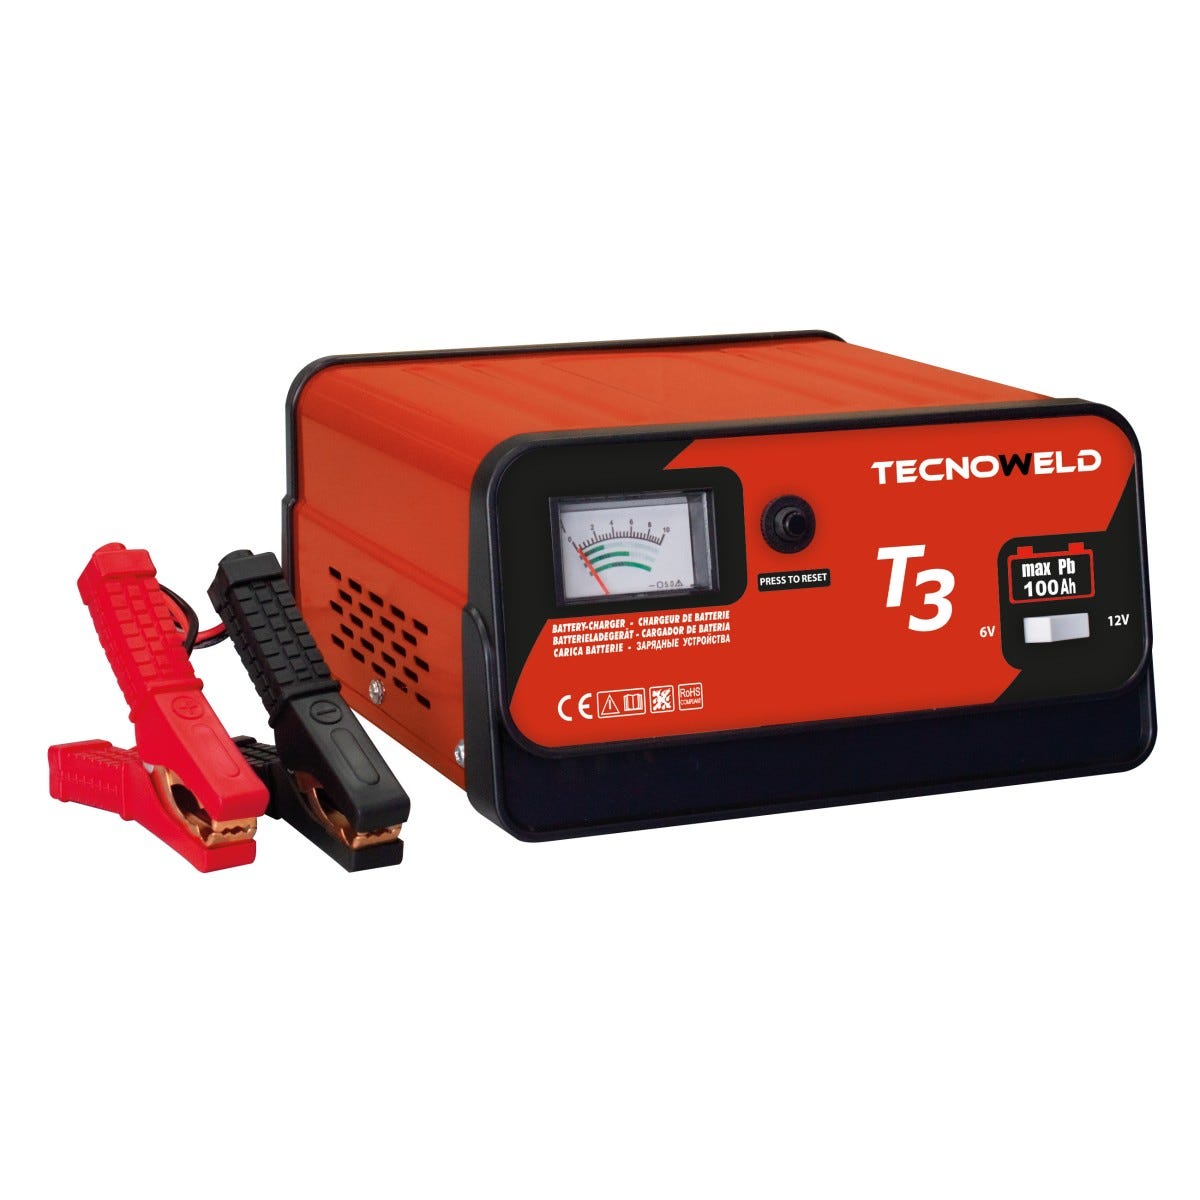 TROTEC Chargeur de batterie PBCS 2A charge de batterie voiture